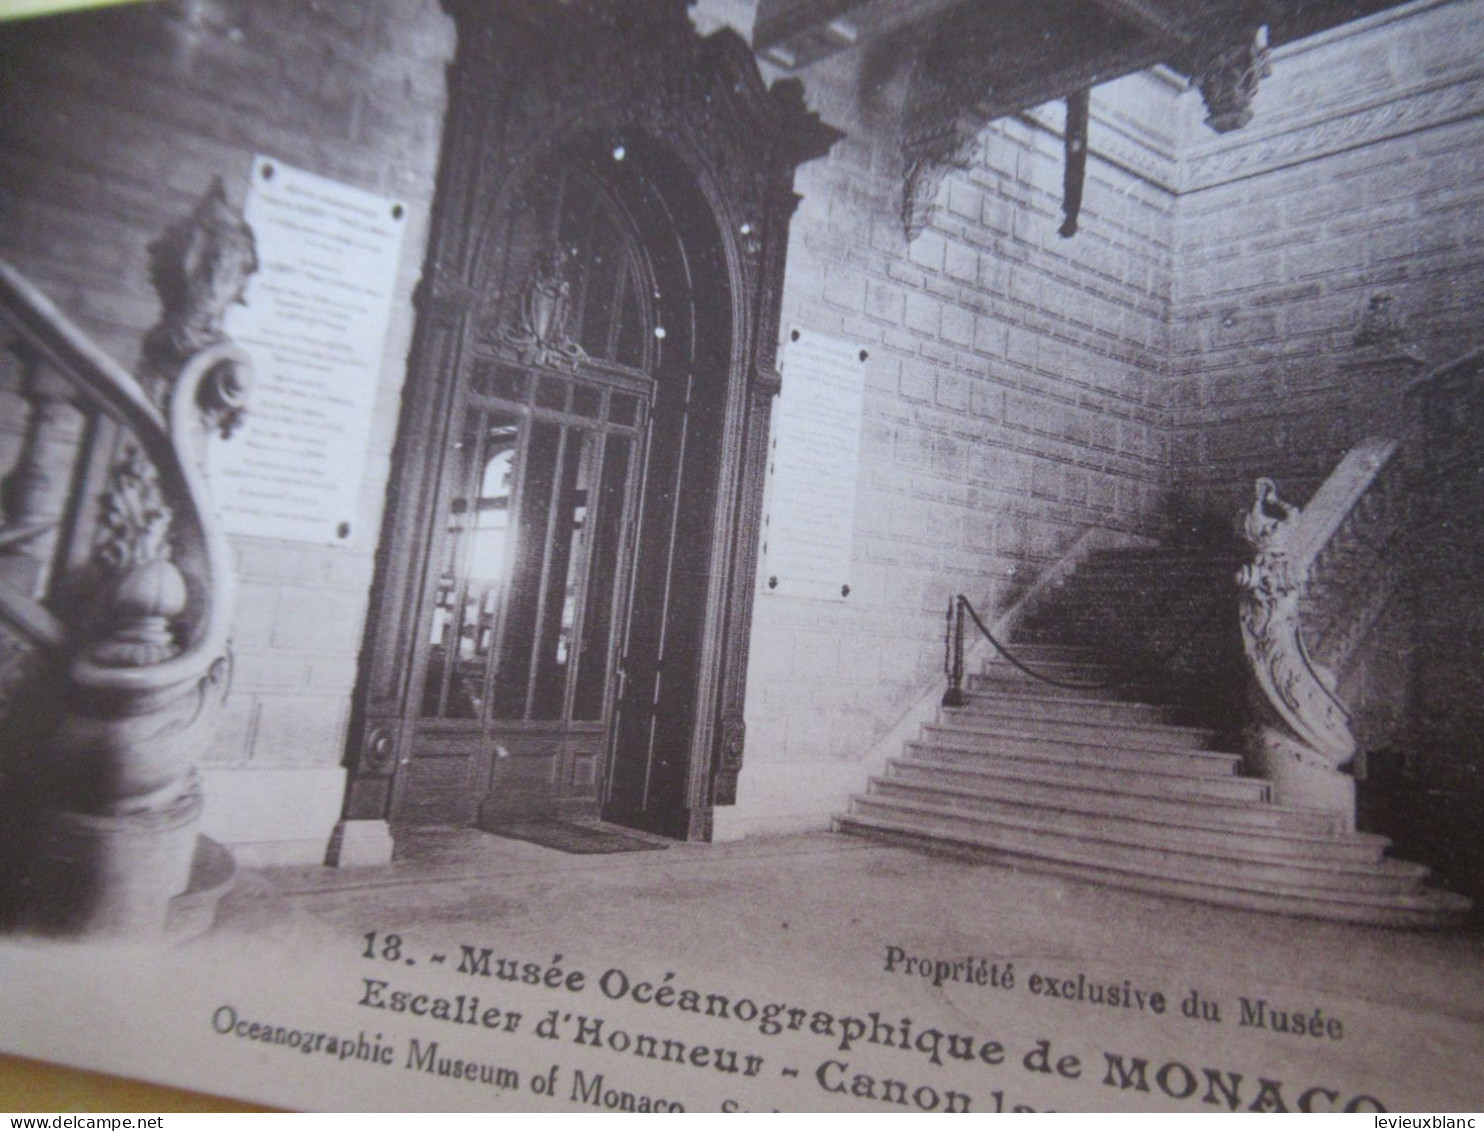 20 Cartes Postales détachables/ Monaco /"Musée Océanographique de MONACO"/Giletta Nice/1920-1930    CPDIV403